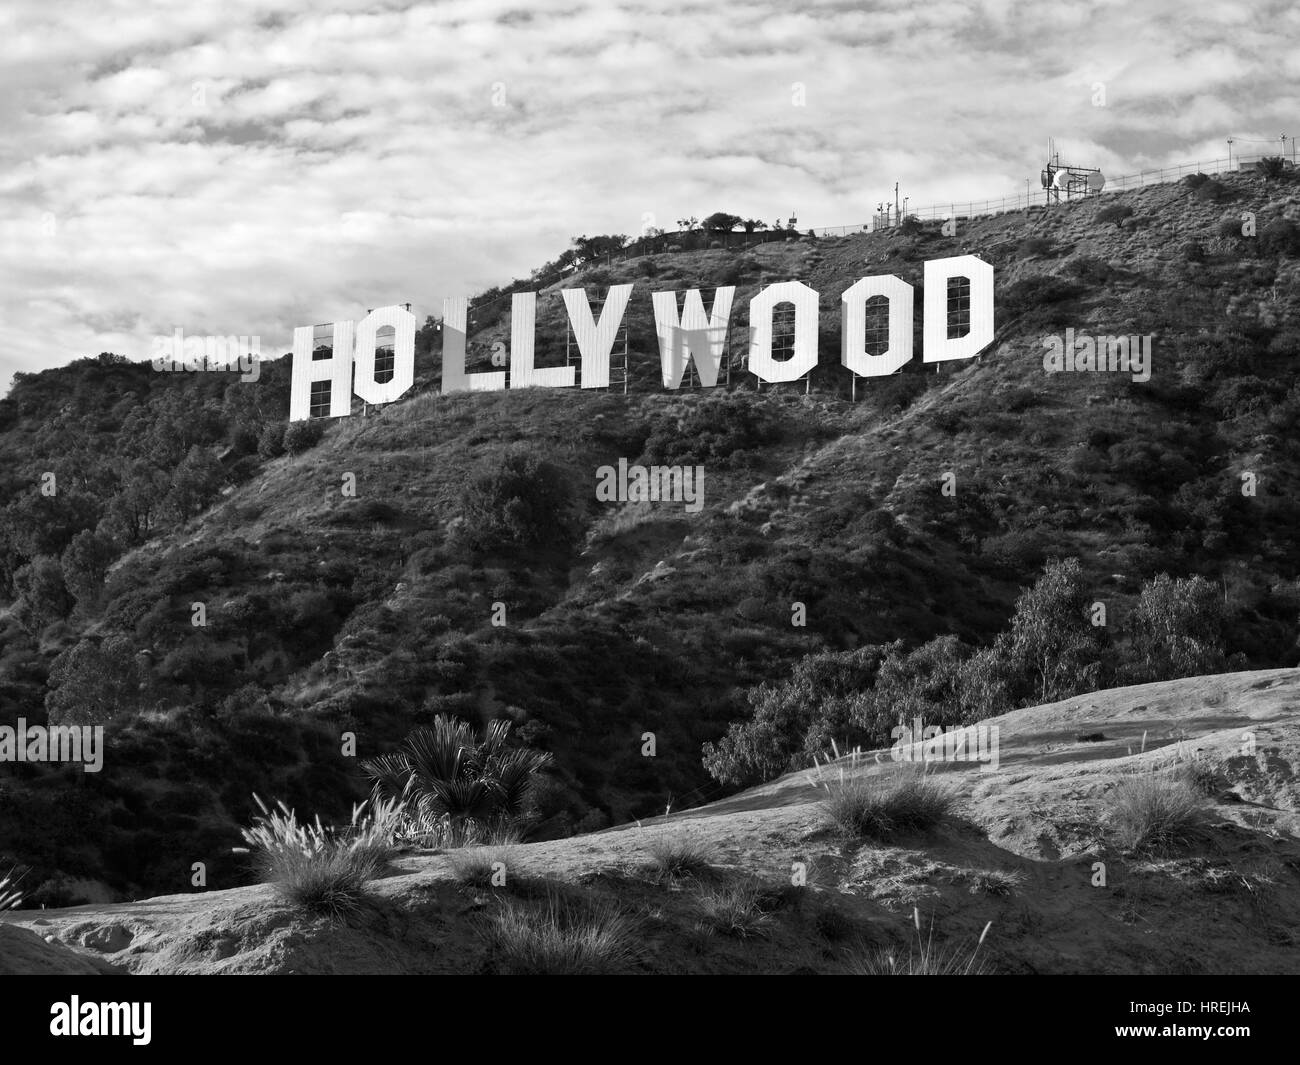 Los Angeles, California, Stati Uniti d'America - Settembre, 29 2010: la famosa insegna di Hollywood in popular Griffith Park. Foto Stock